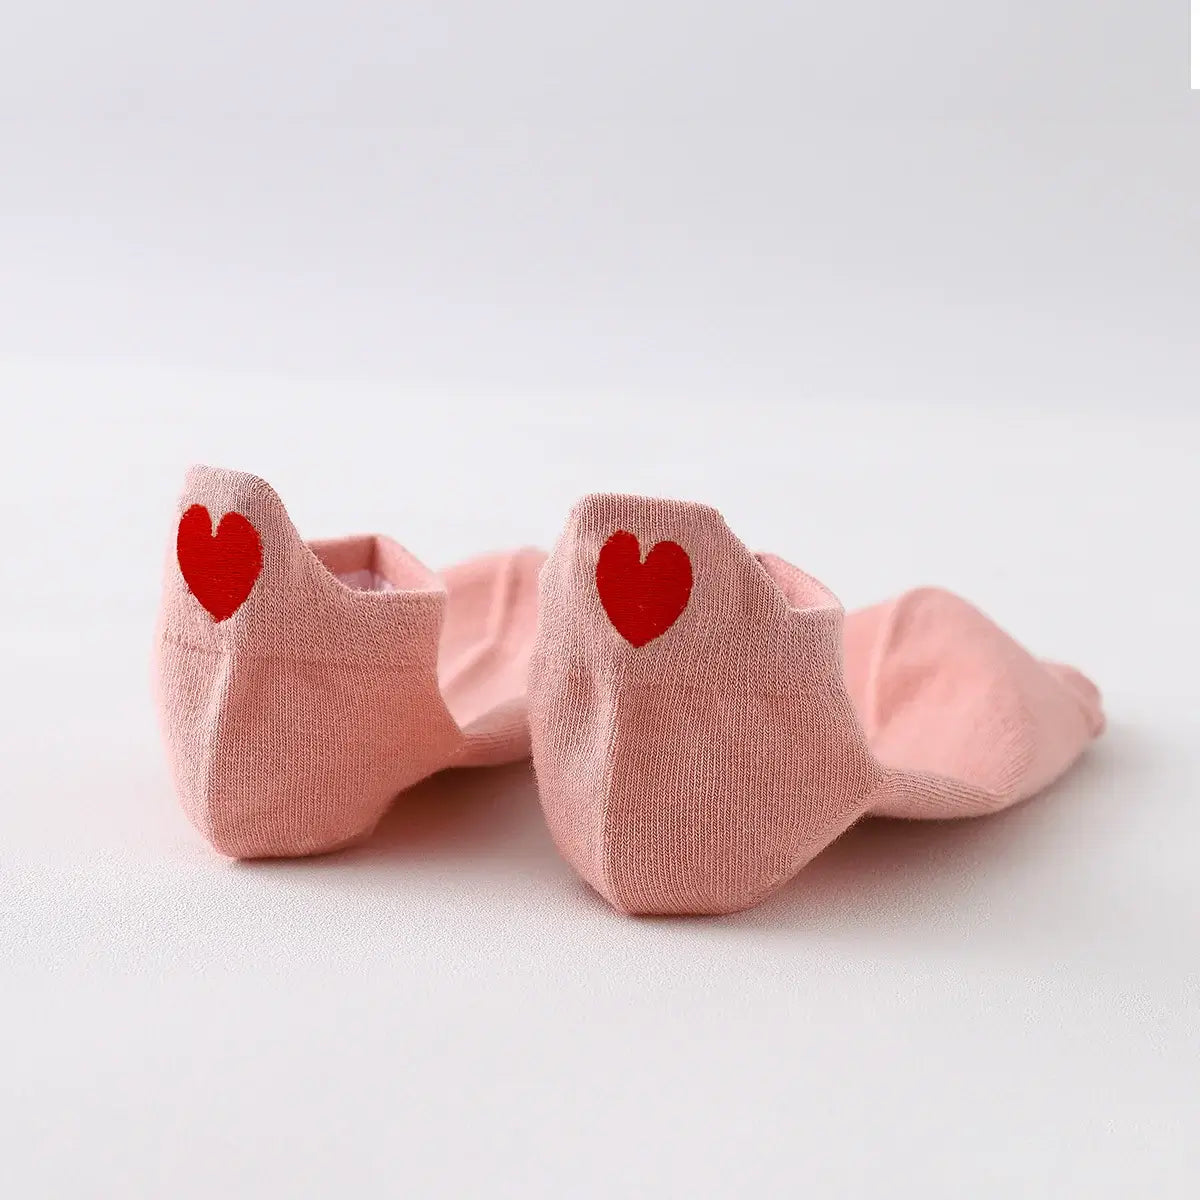 Chaussettes rose en coton à languette cœur rouge pour femme | Chaussettes douces et respirantes | Fabriquées à partir de matériaux de haute qualité | Un cadeau parfait pour les femmes de tous âges